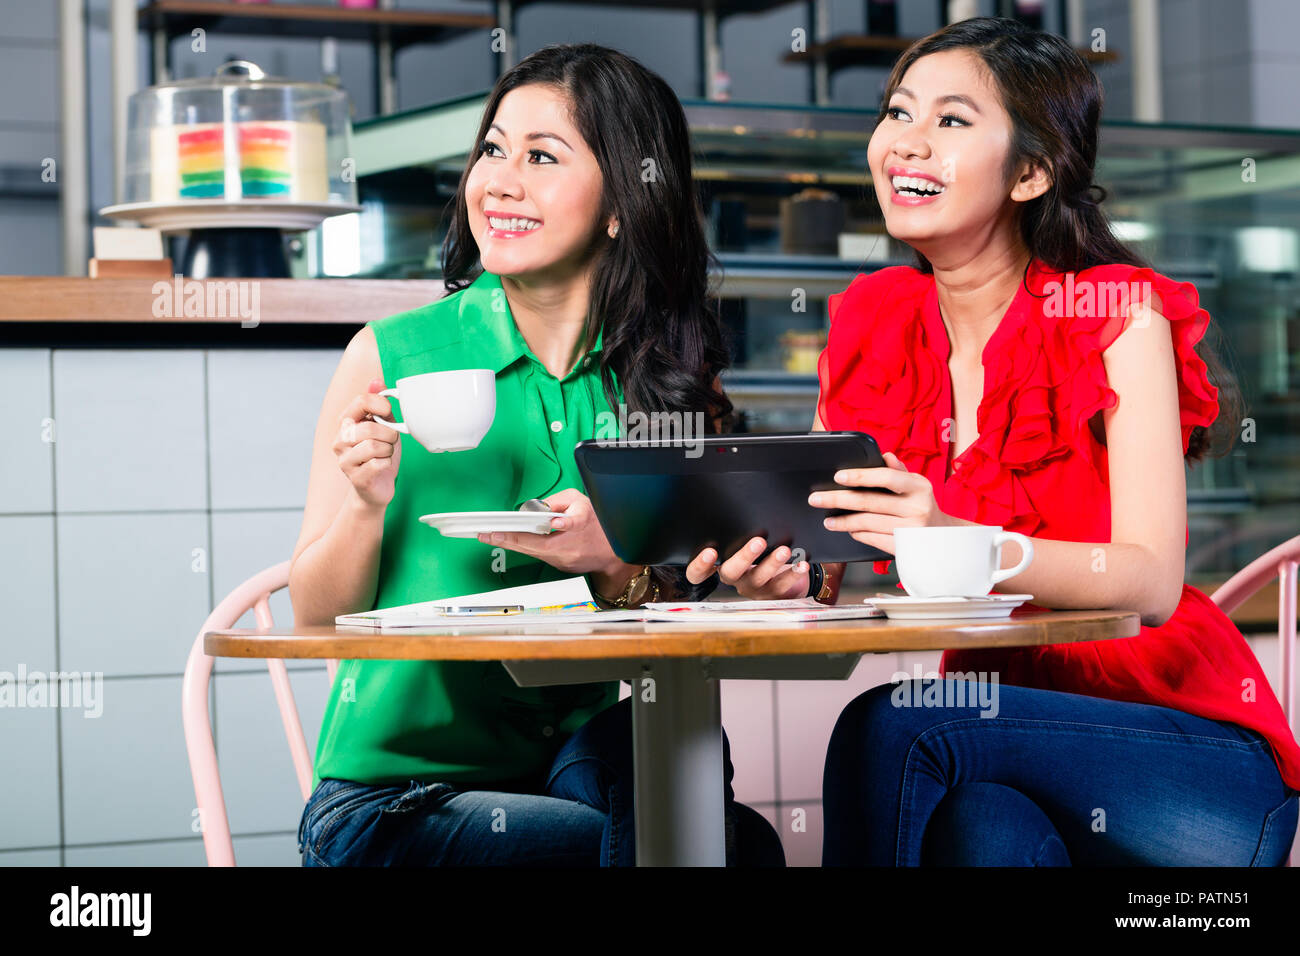 Zwei schöne Frauen, die zusammen einen Tablet-PC bei einer Tasse Kaffee Stockfoto